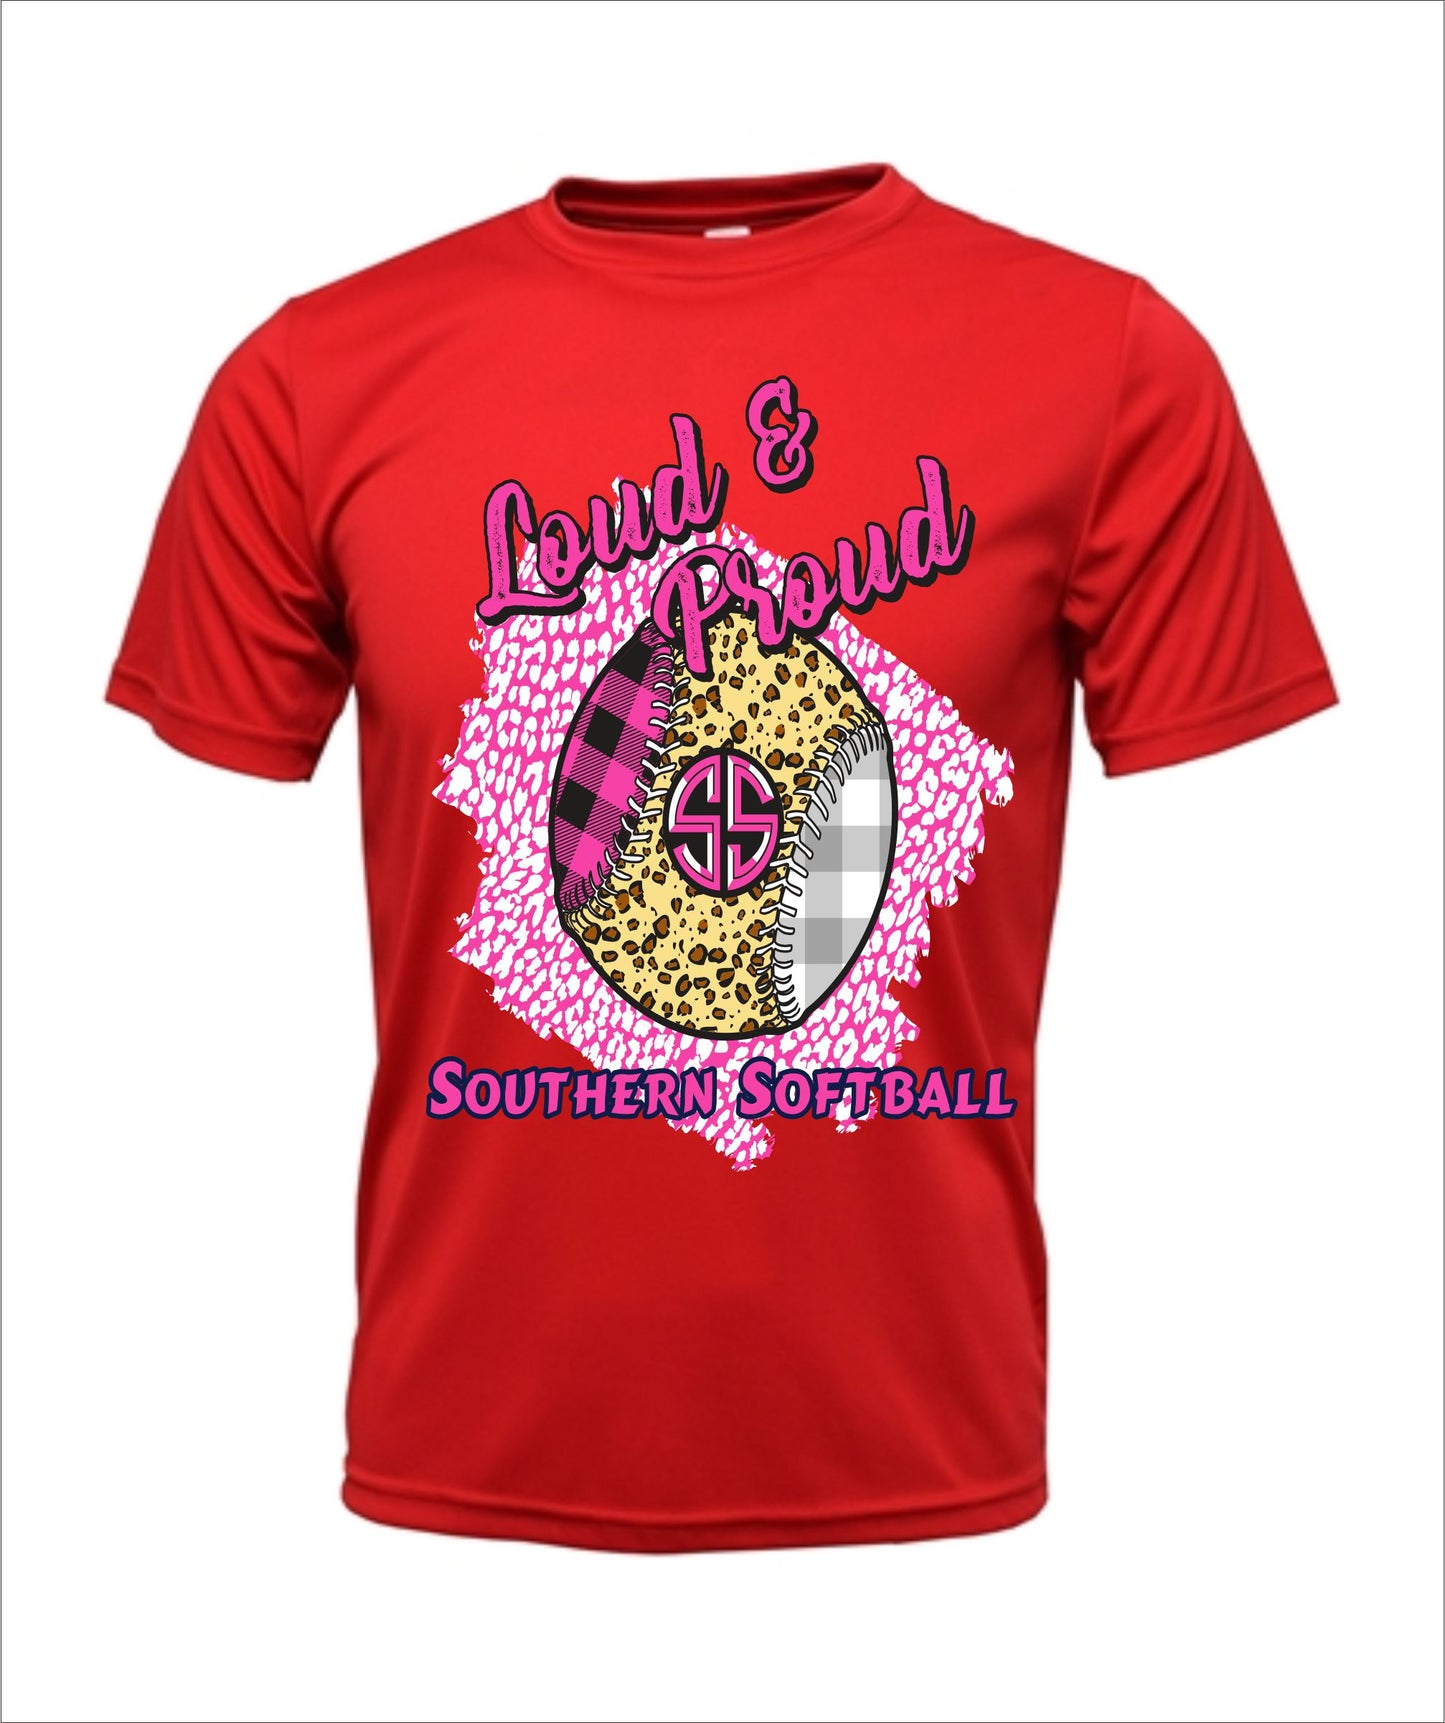 Southern Softball "Loud & Proud" Cotton T-shirt